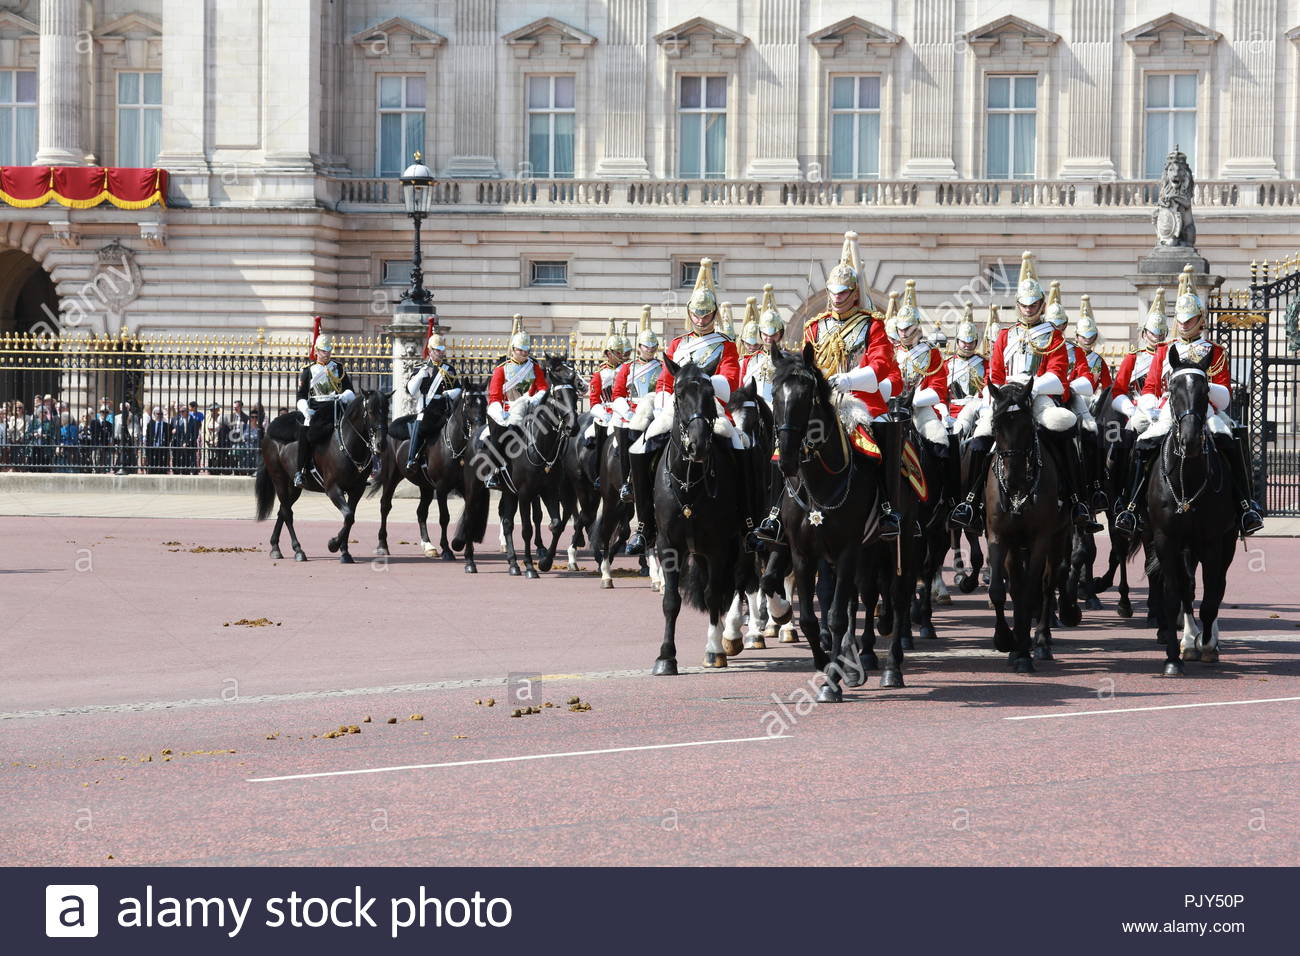 Die jährliche die Farbe in London zu Ehren von Königin Elizabeth's Geburtstag übernommen hat. Tausende säumten die Straßen ihrer Majestät begrüßen zu ein Stockfoto